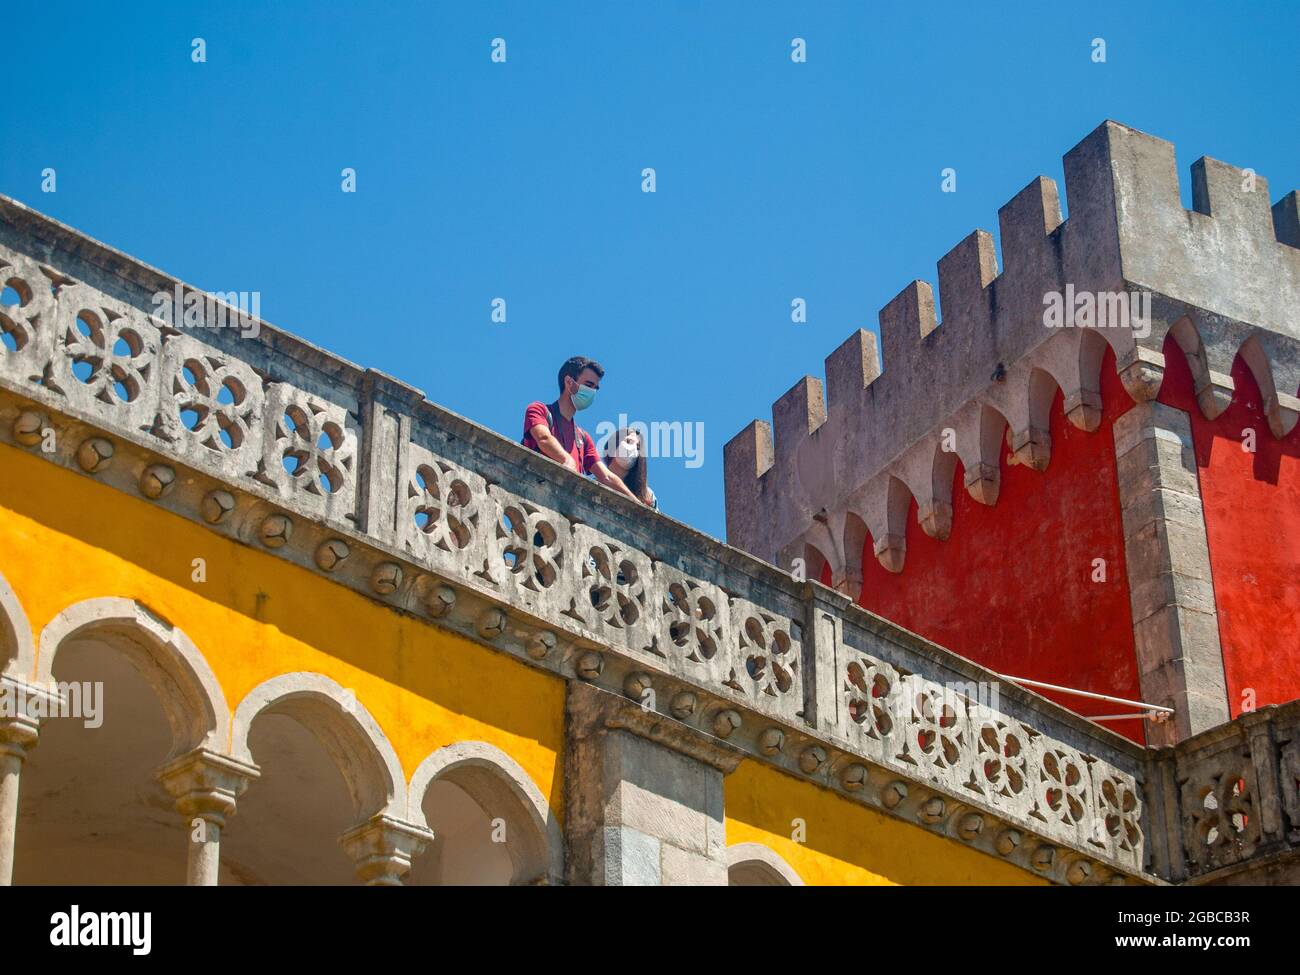 Eine Frau und ein Mann blicken auf den wunderschönen balkon im maurischen Stil des romantistischen Turms, der gelb und rot gefärbt ist Stockfoto